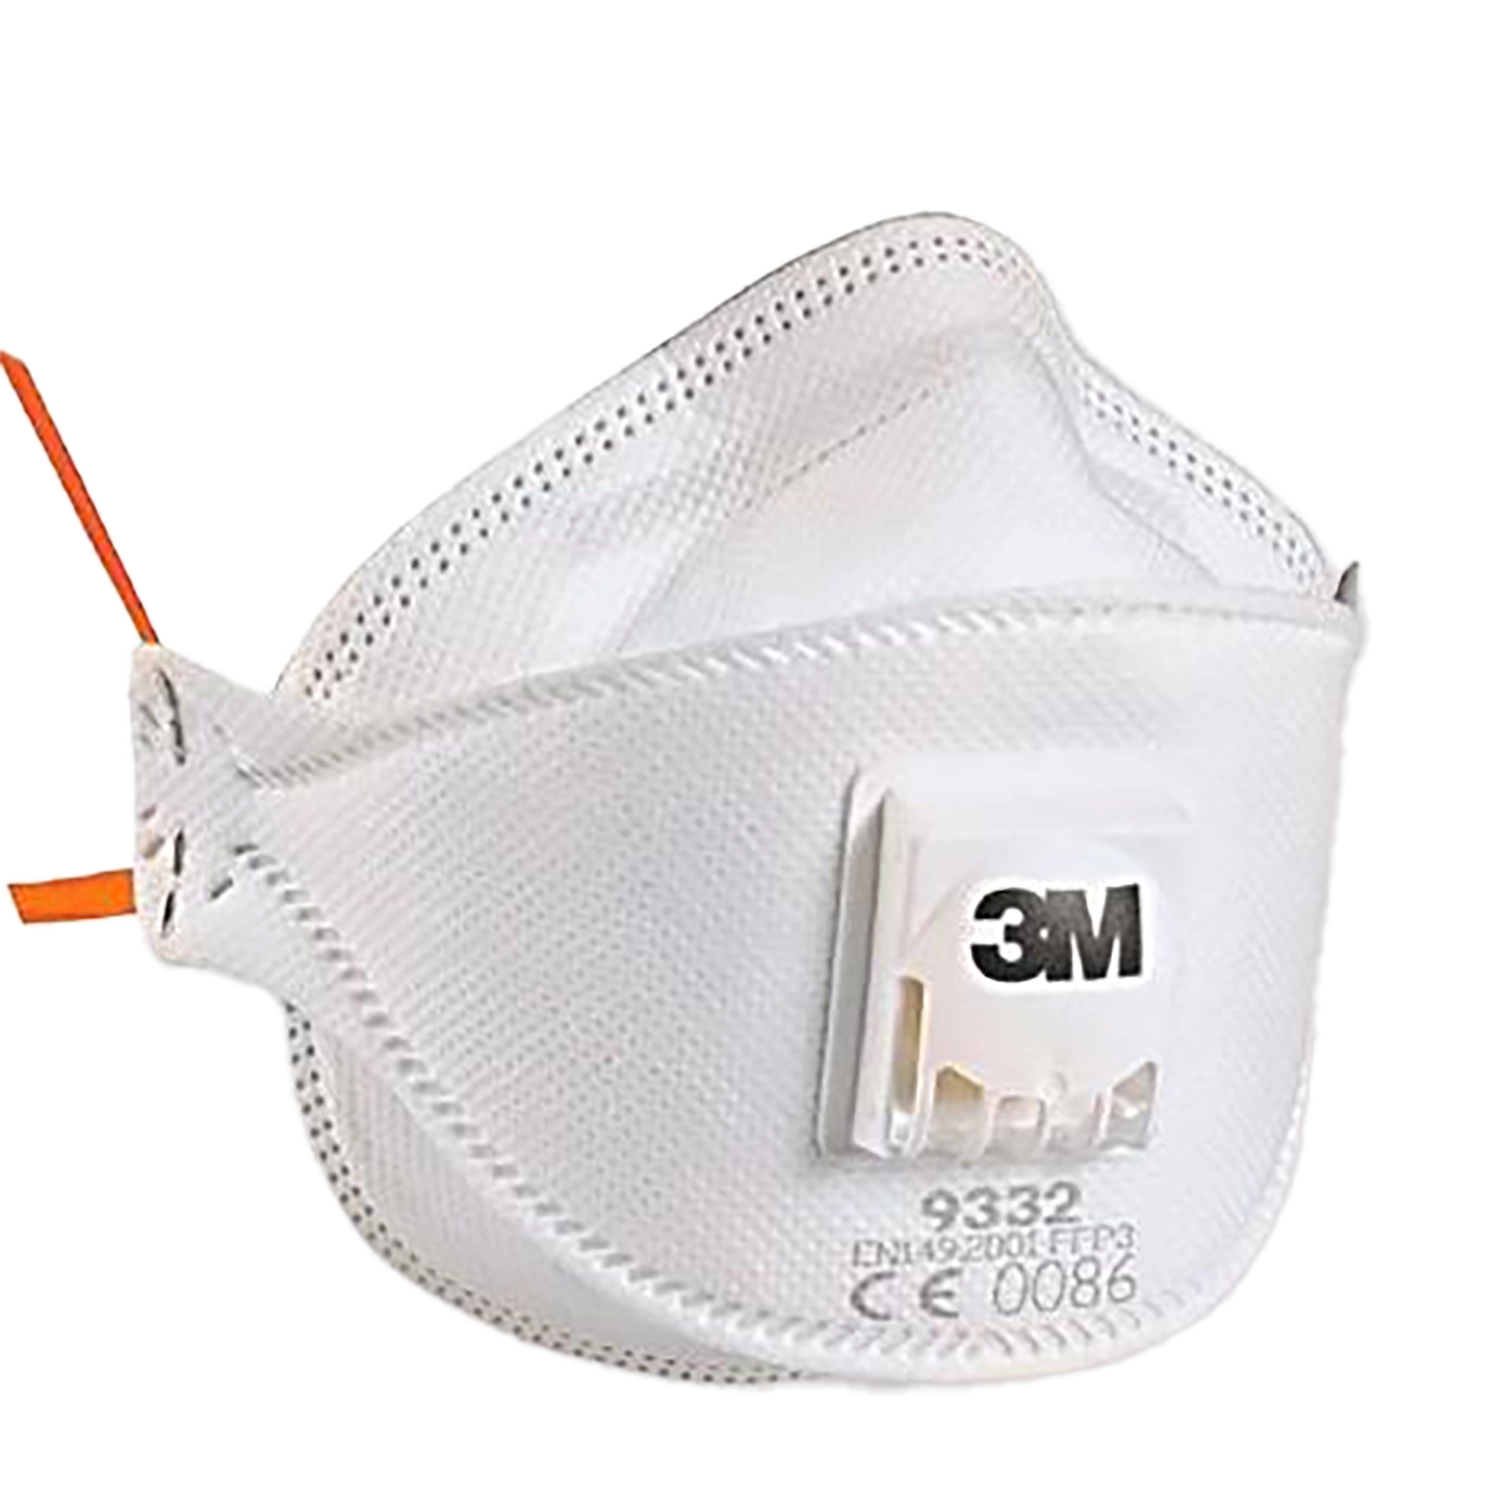 Masque anti-poussière FFP3 9332+ avec valve